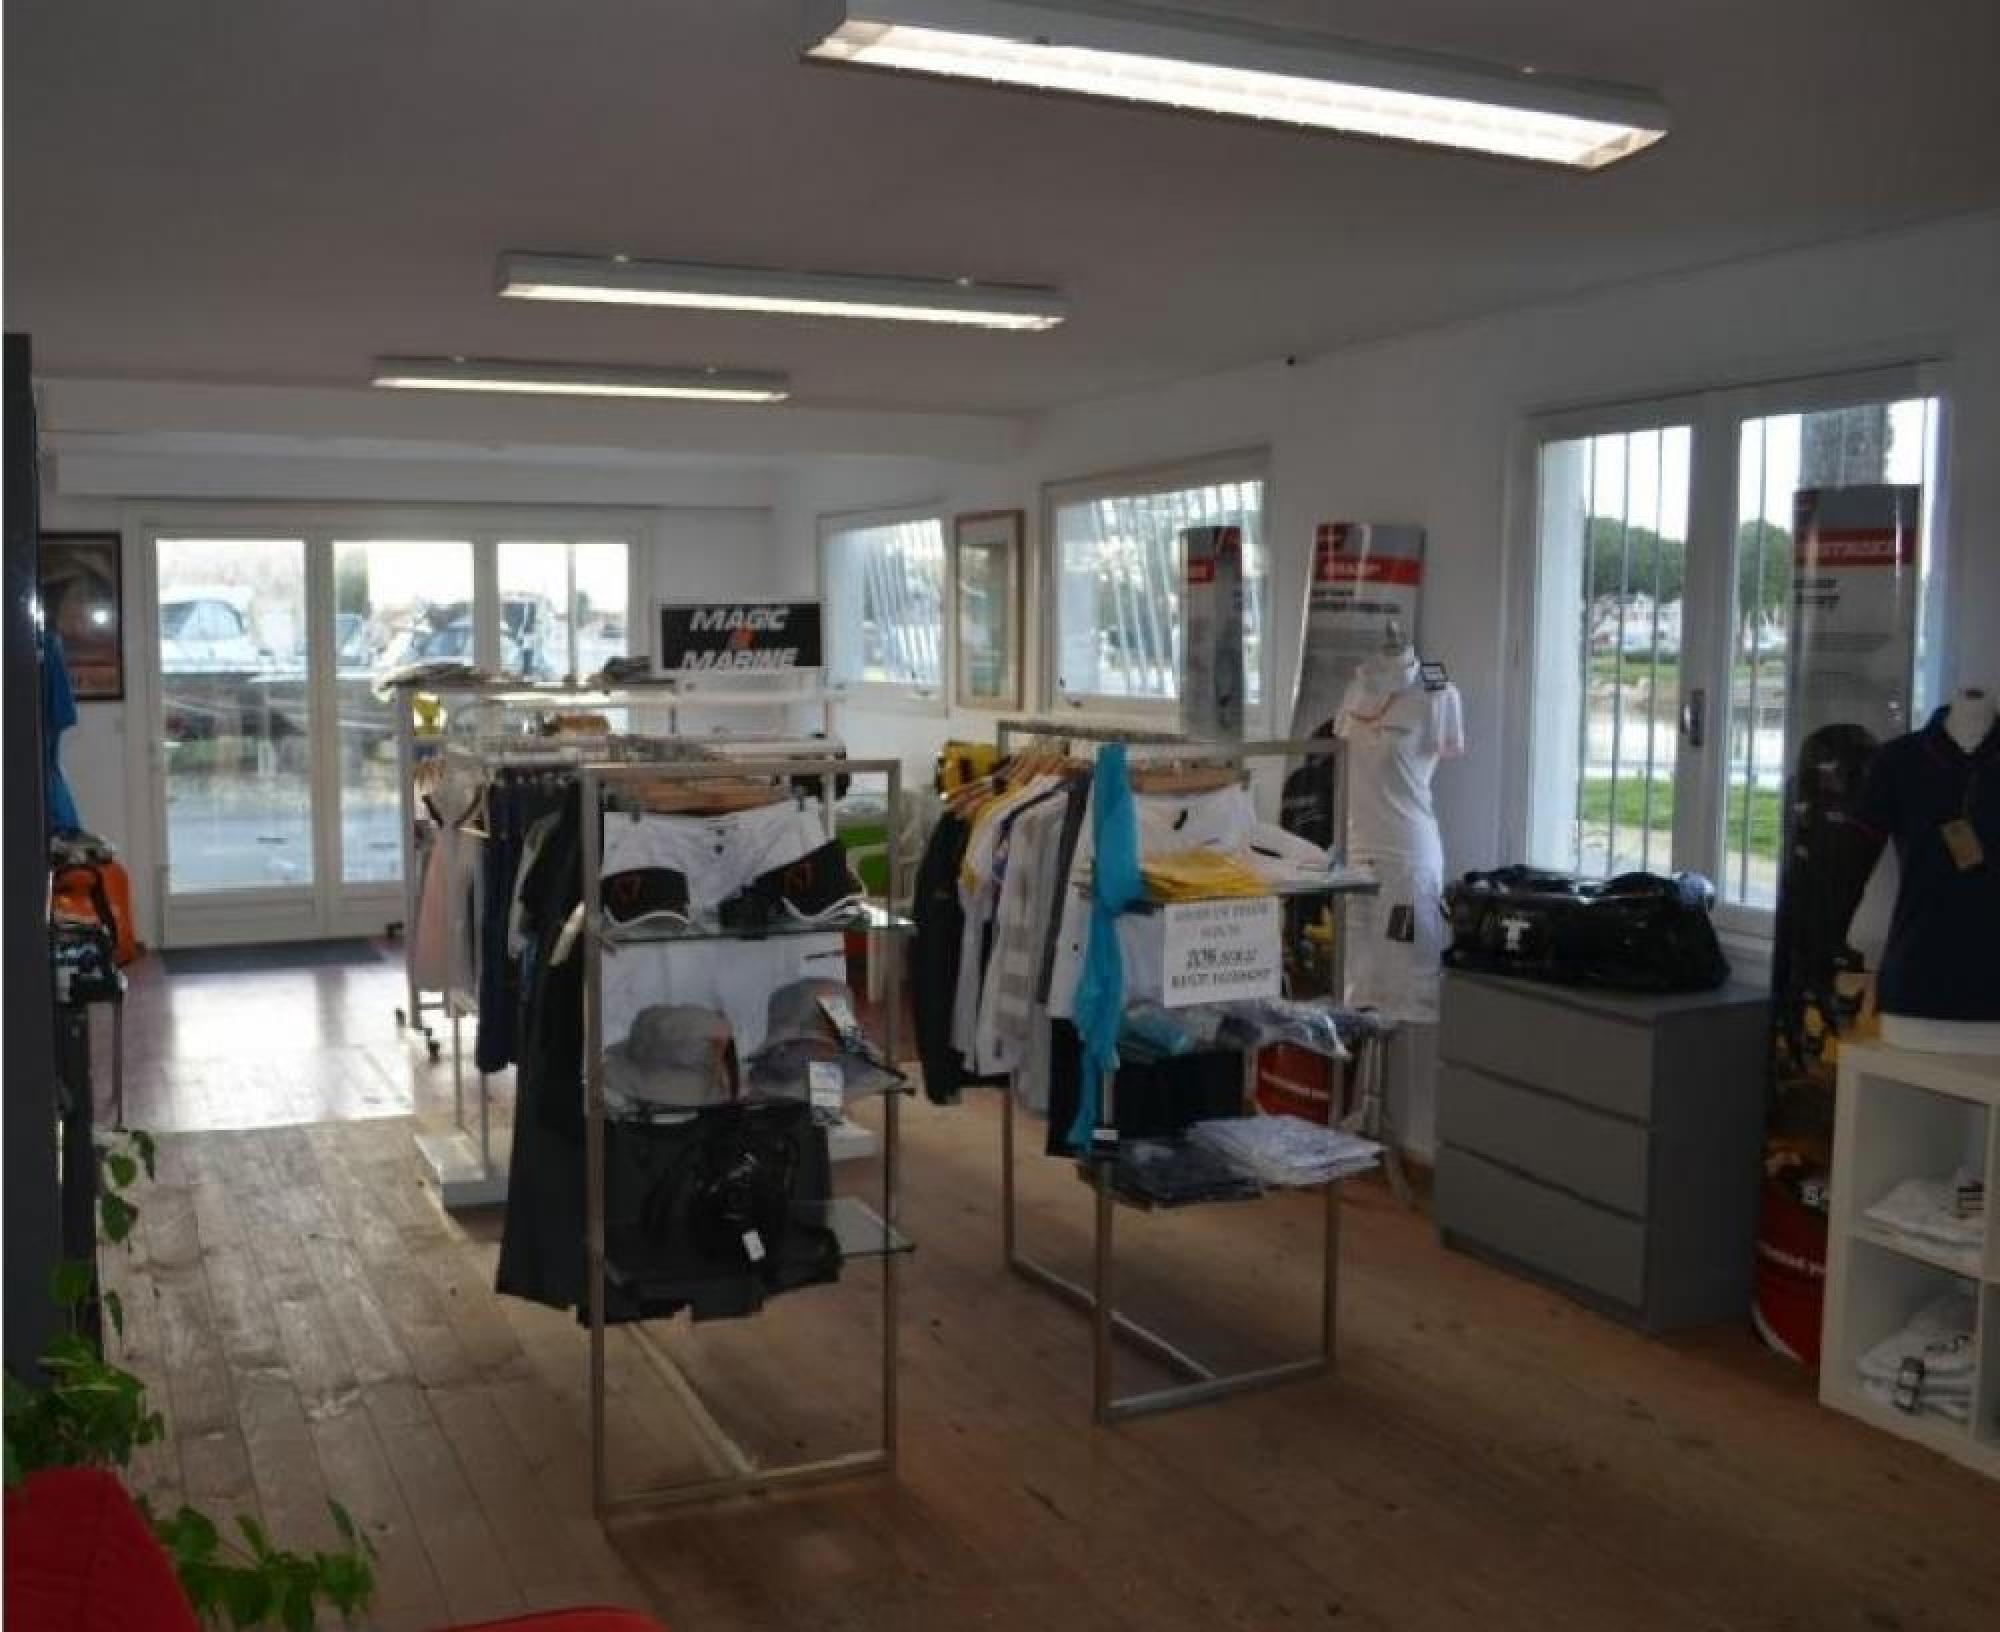 Promotions chantier naval La Perrotine : PROMOTION SUR LES VETEMENTS (- 30% et - 50% sur les vêtements en magasin) - Ile d'Oléron - Charente Maritime